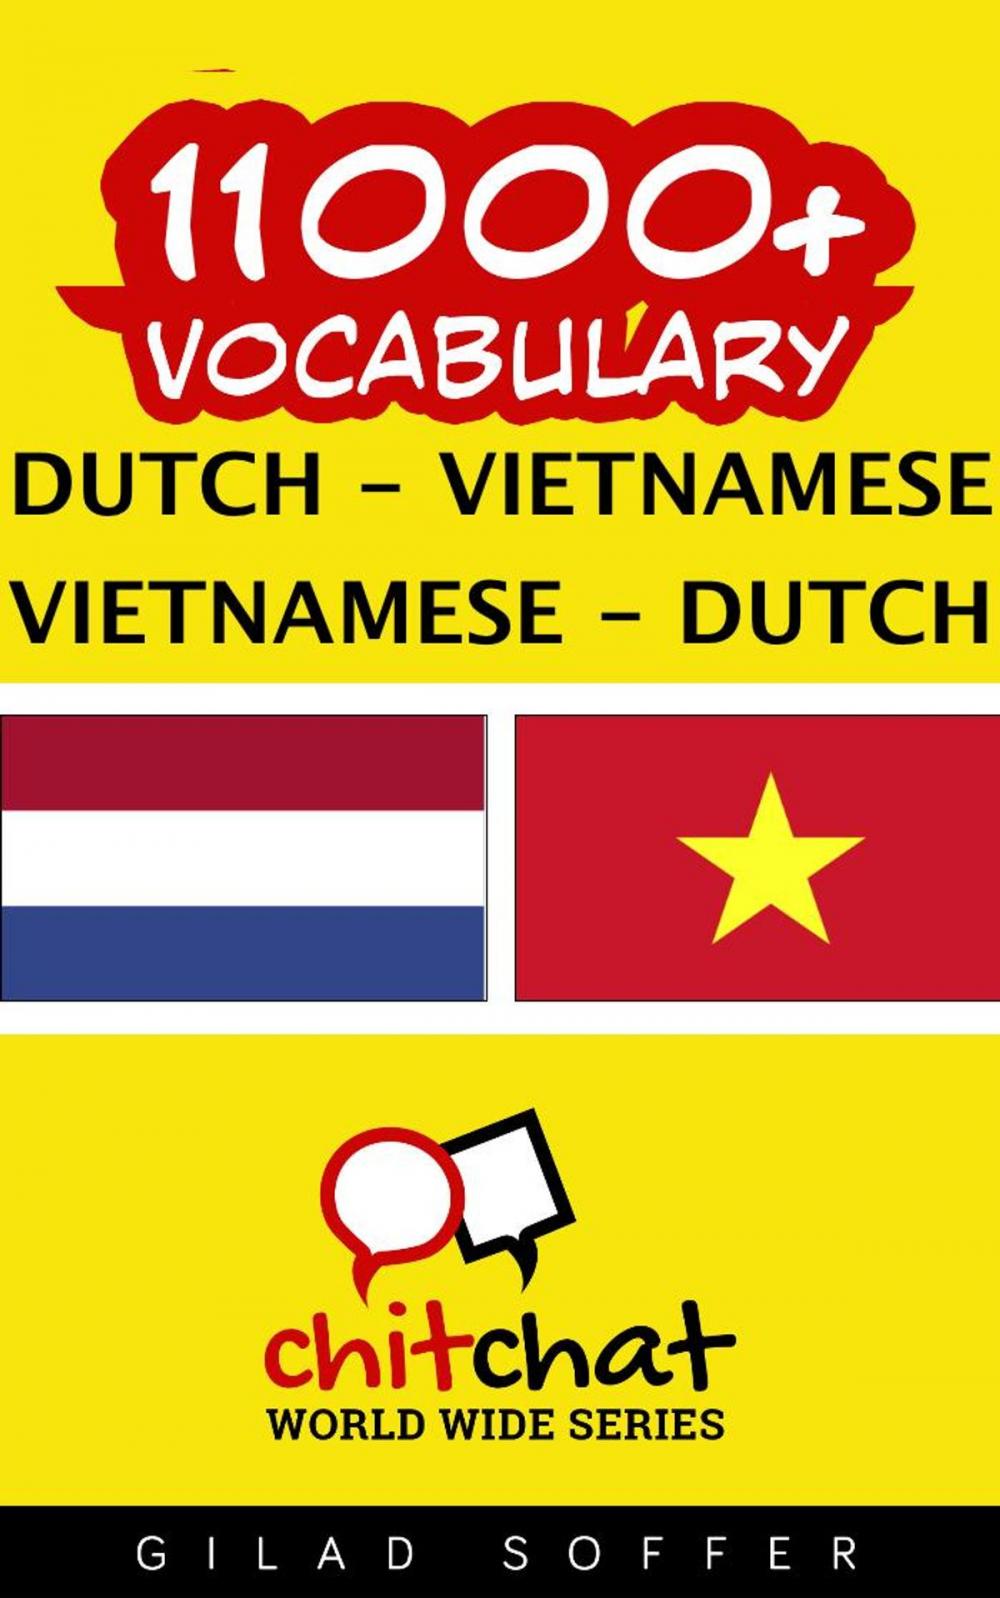 Big bigCover of 11000+ Vocabulary Dutch - Vietnamese